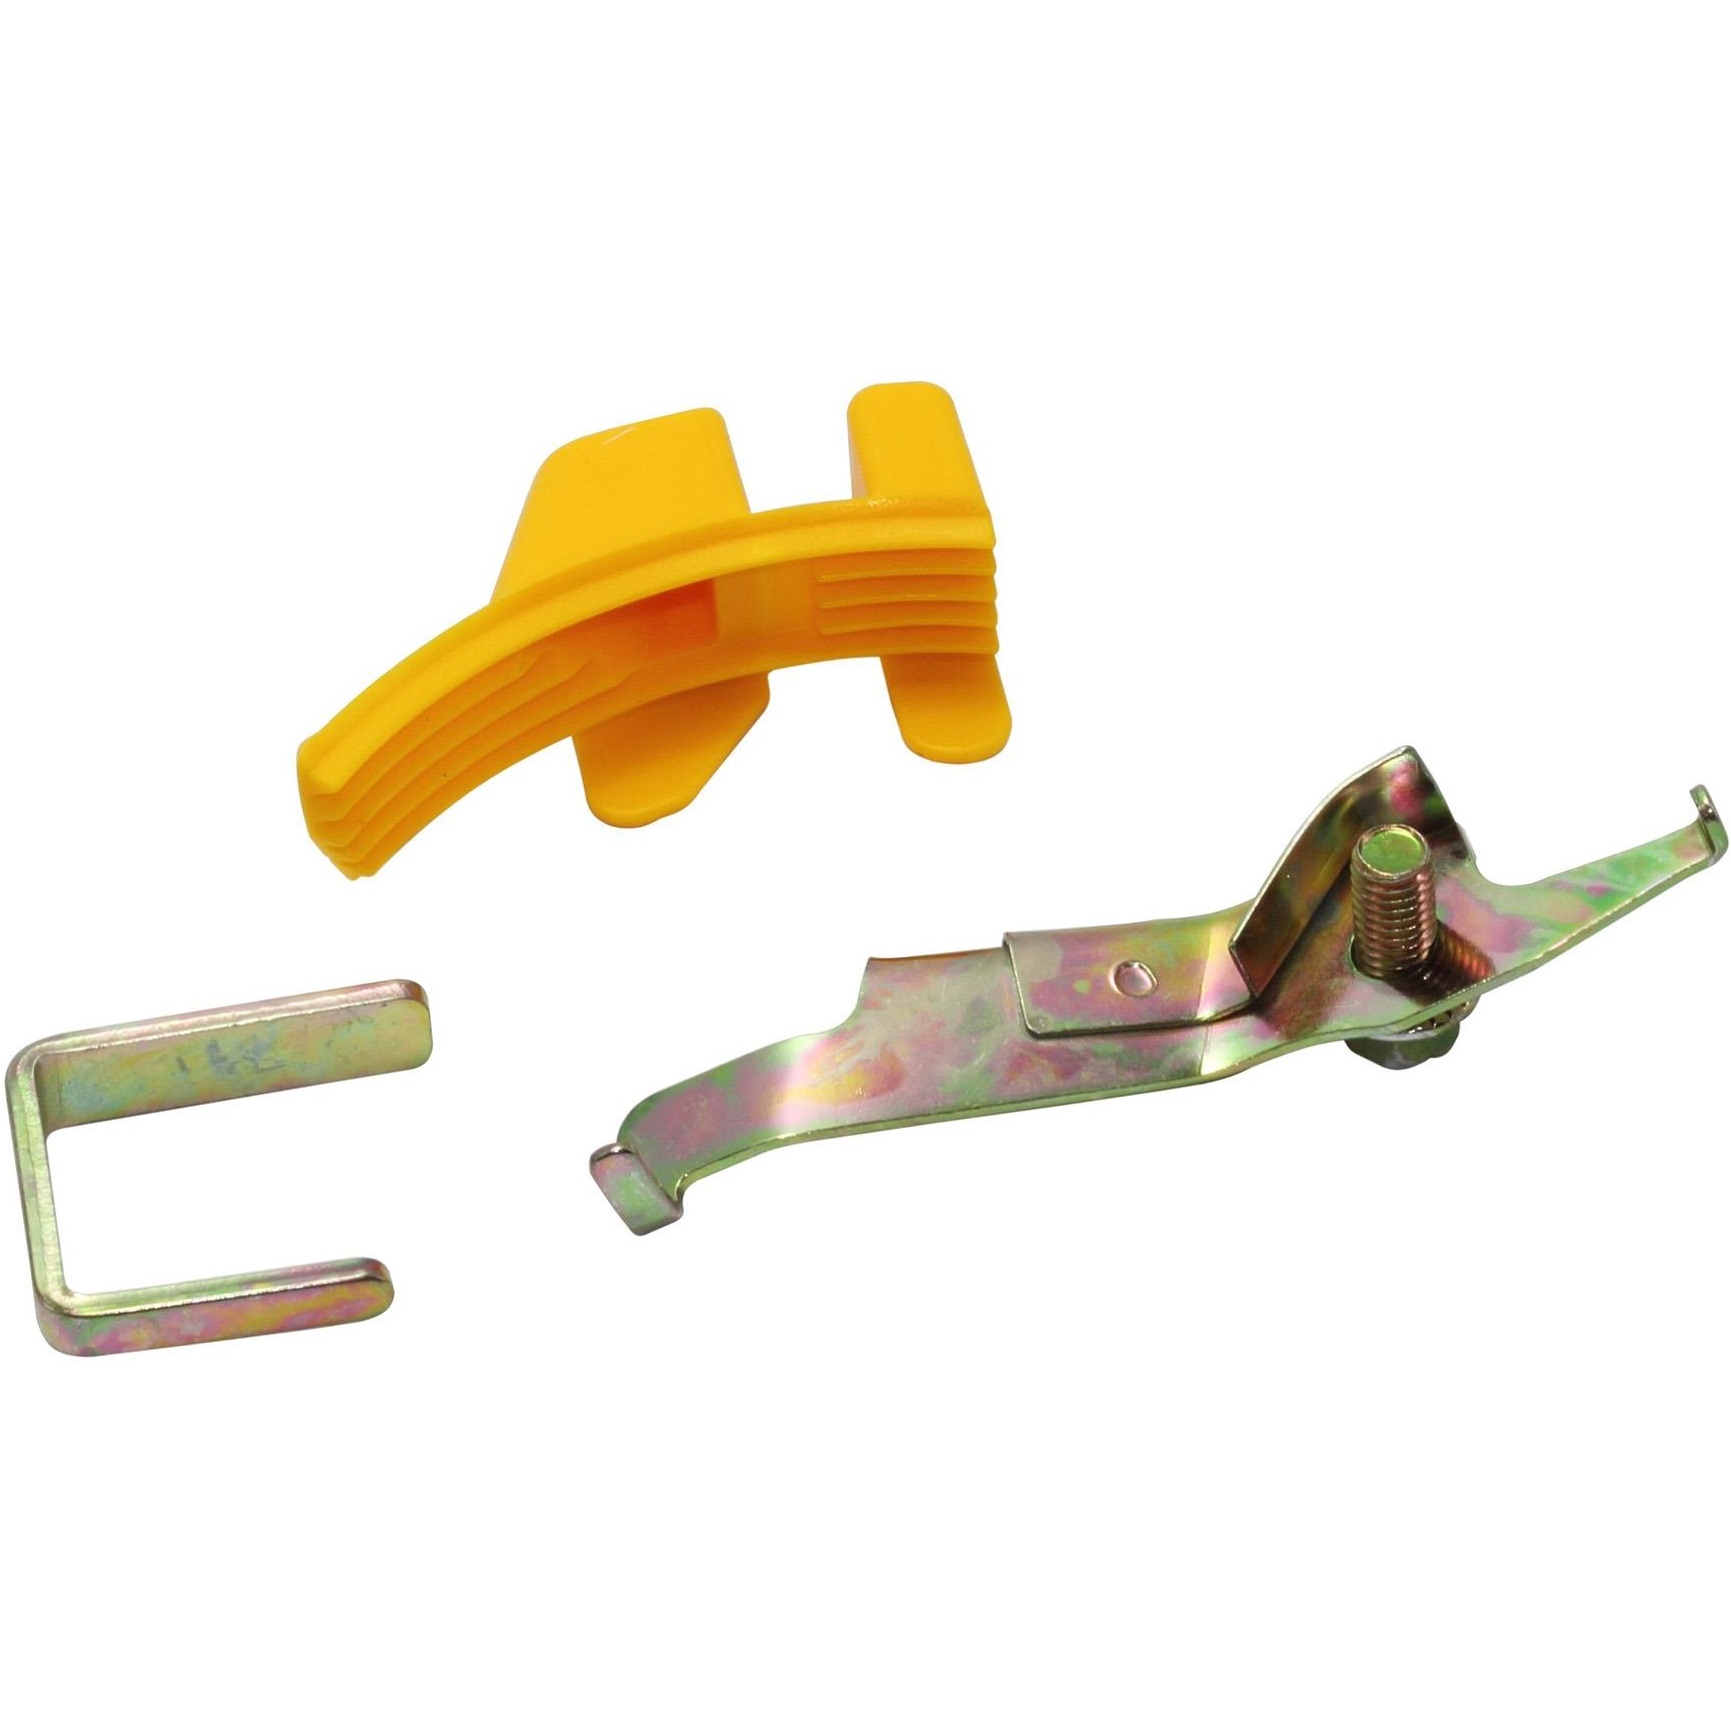 Náradie na montáž elastických remeňov / drážkovaných klinových remeňov, pre Subaru, STAHLMAXX 115158